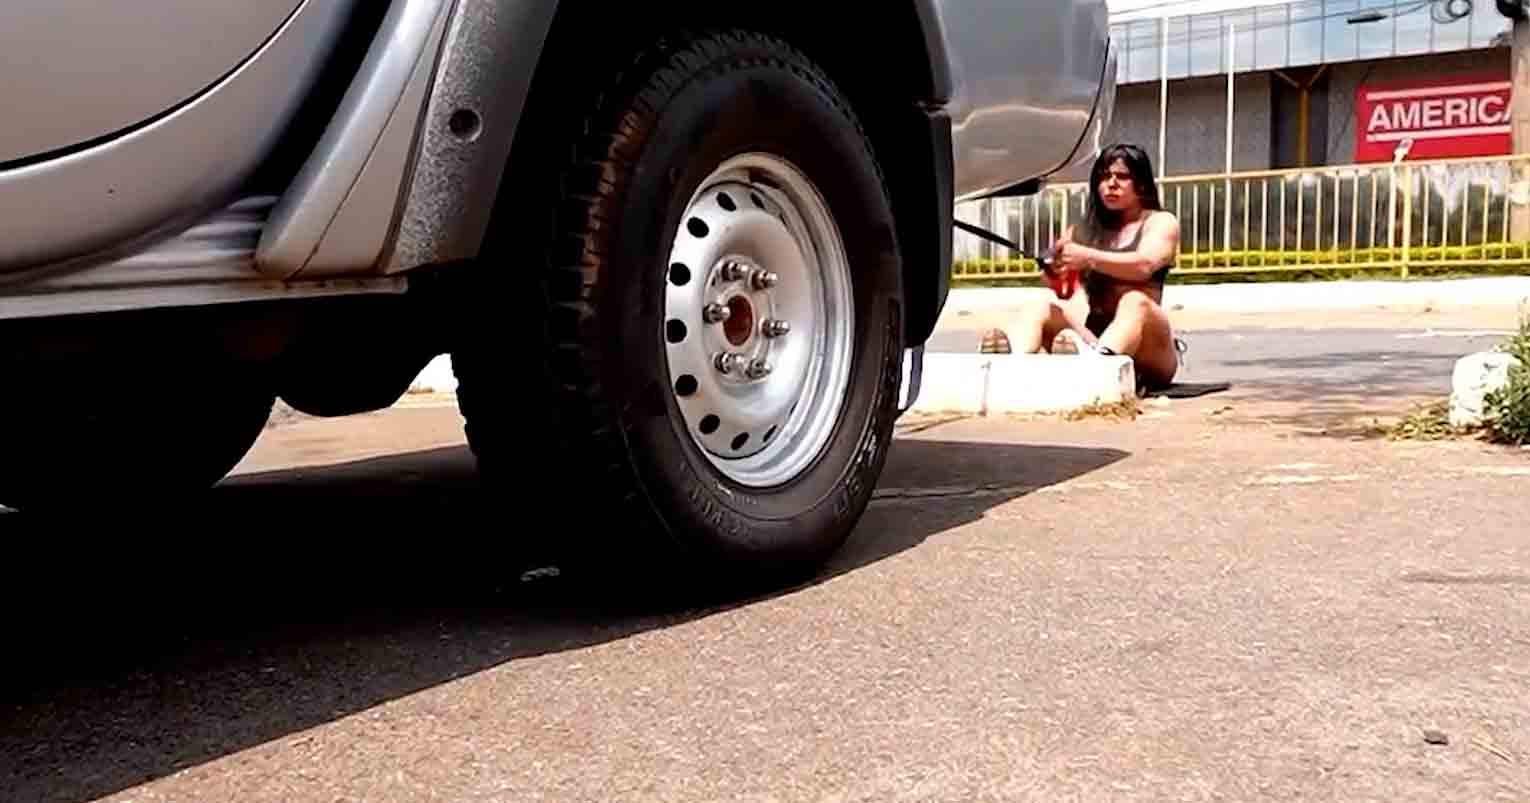 סרטון: המשפיעה סוזי קורטז מחרידה את עוקביה עם אימון במשיכת מכונית פיקאפ. תמונה וסרטון: שוברודוקשן אינסטגרם @suzyacortez